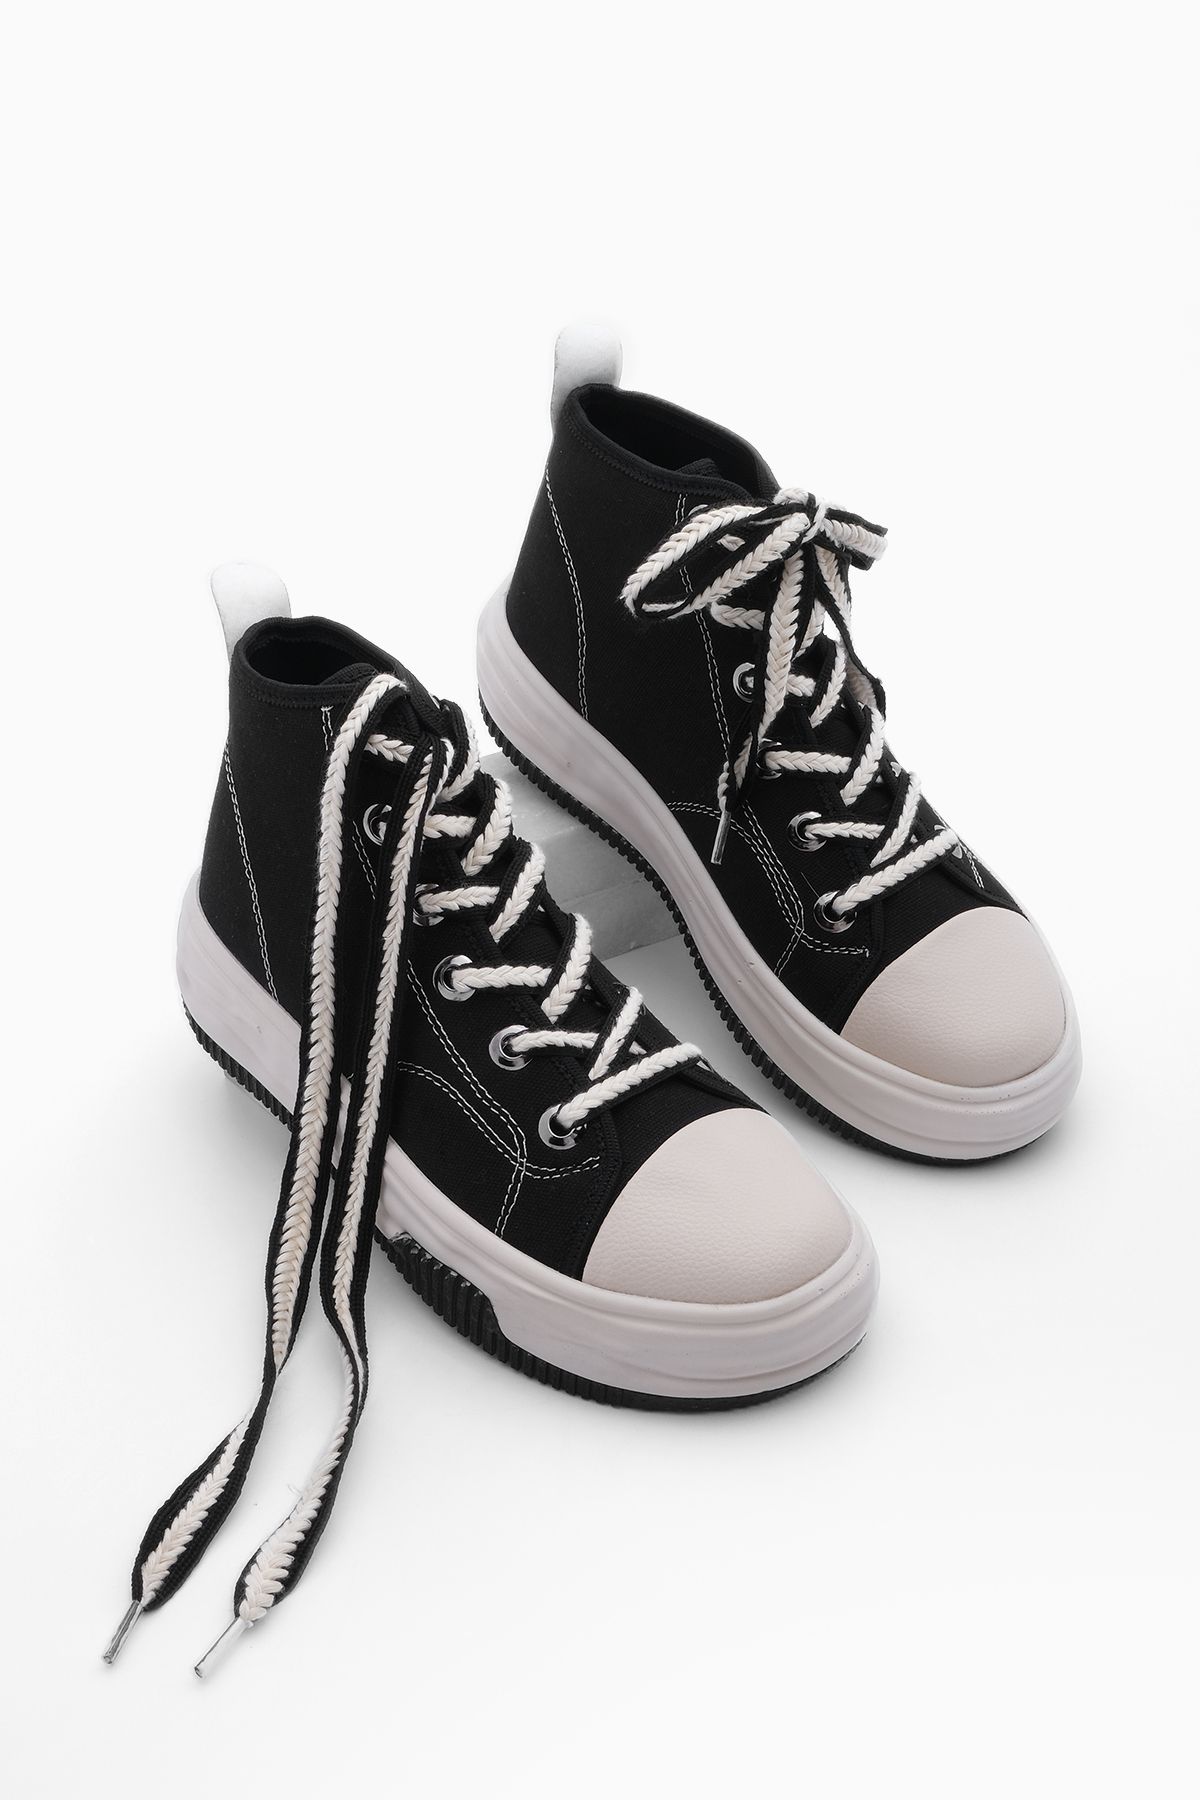 Marjin Kadın Bağcıklı Sneaker Yüksek Taban Bilekli Bez Spor Ayakkabı Elesva siyah